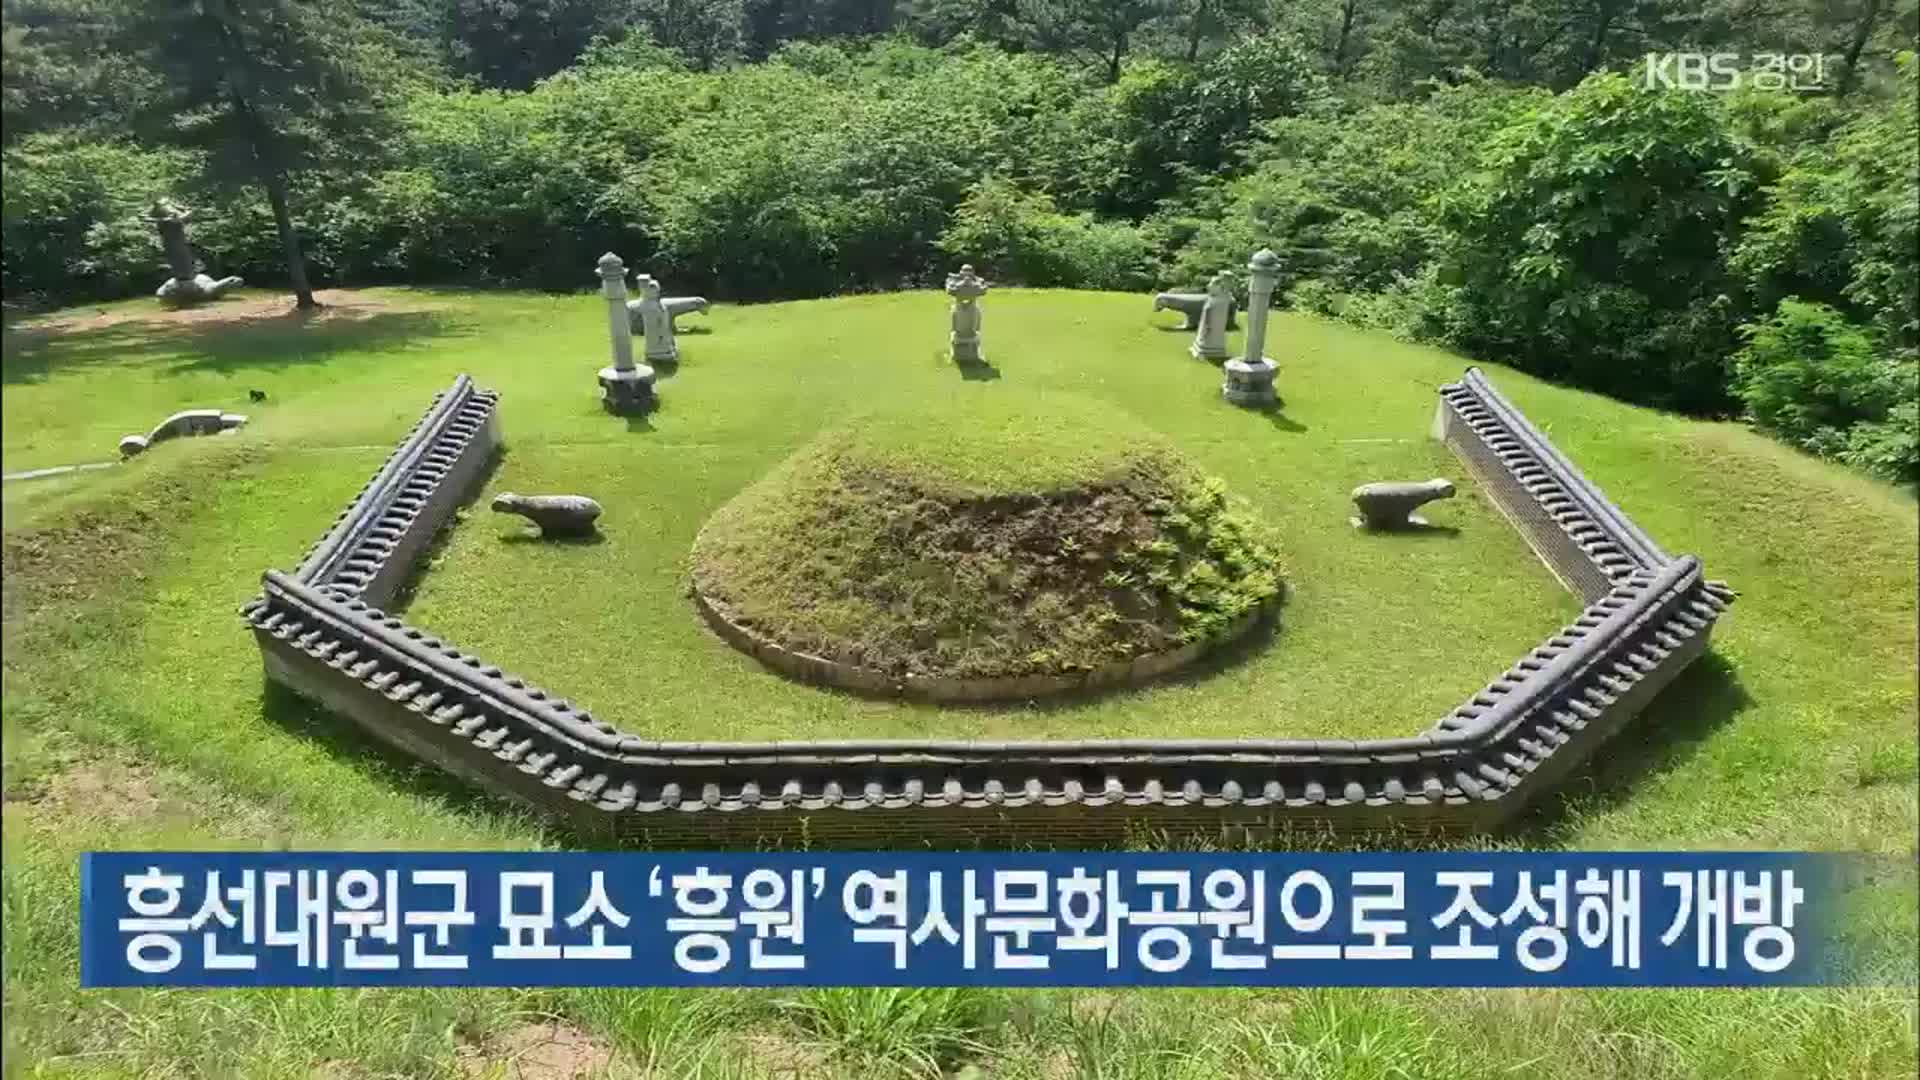 흥선대원군 묘소 ‘흥원’ 역사문화공원으로 조성해 개방